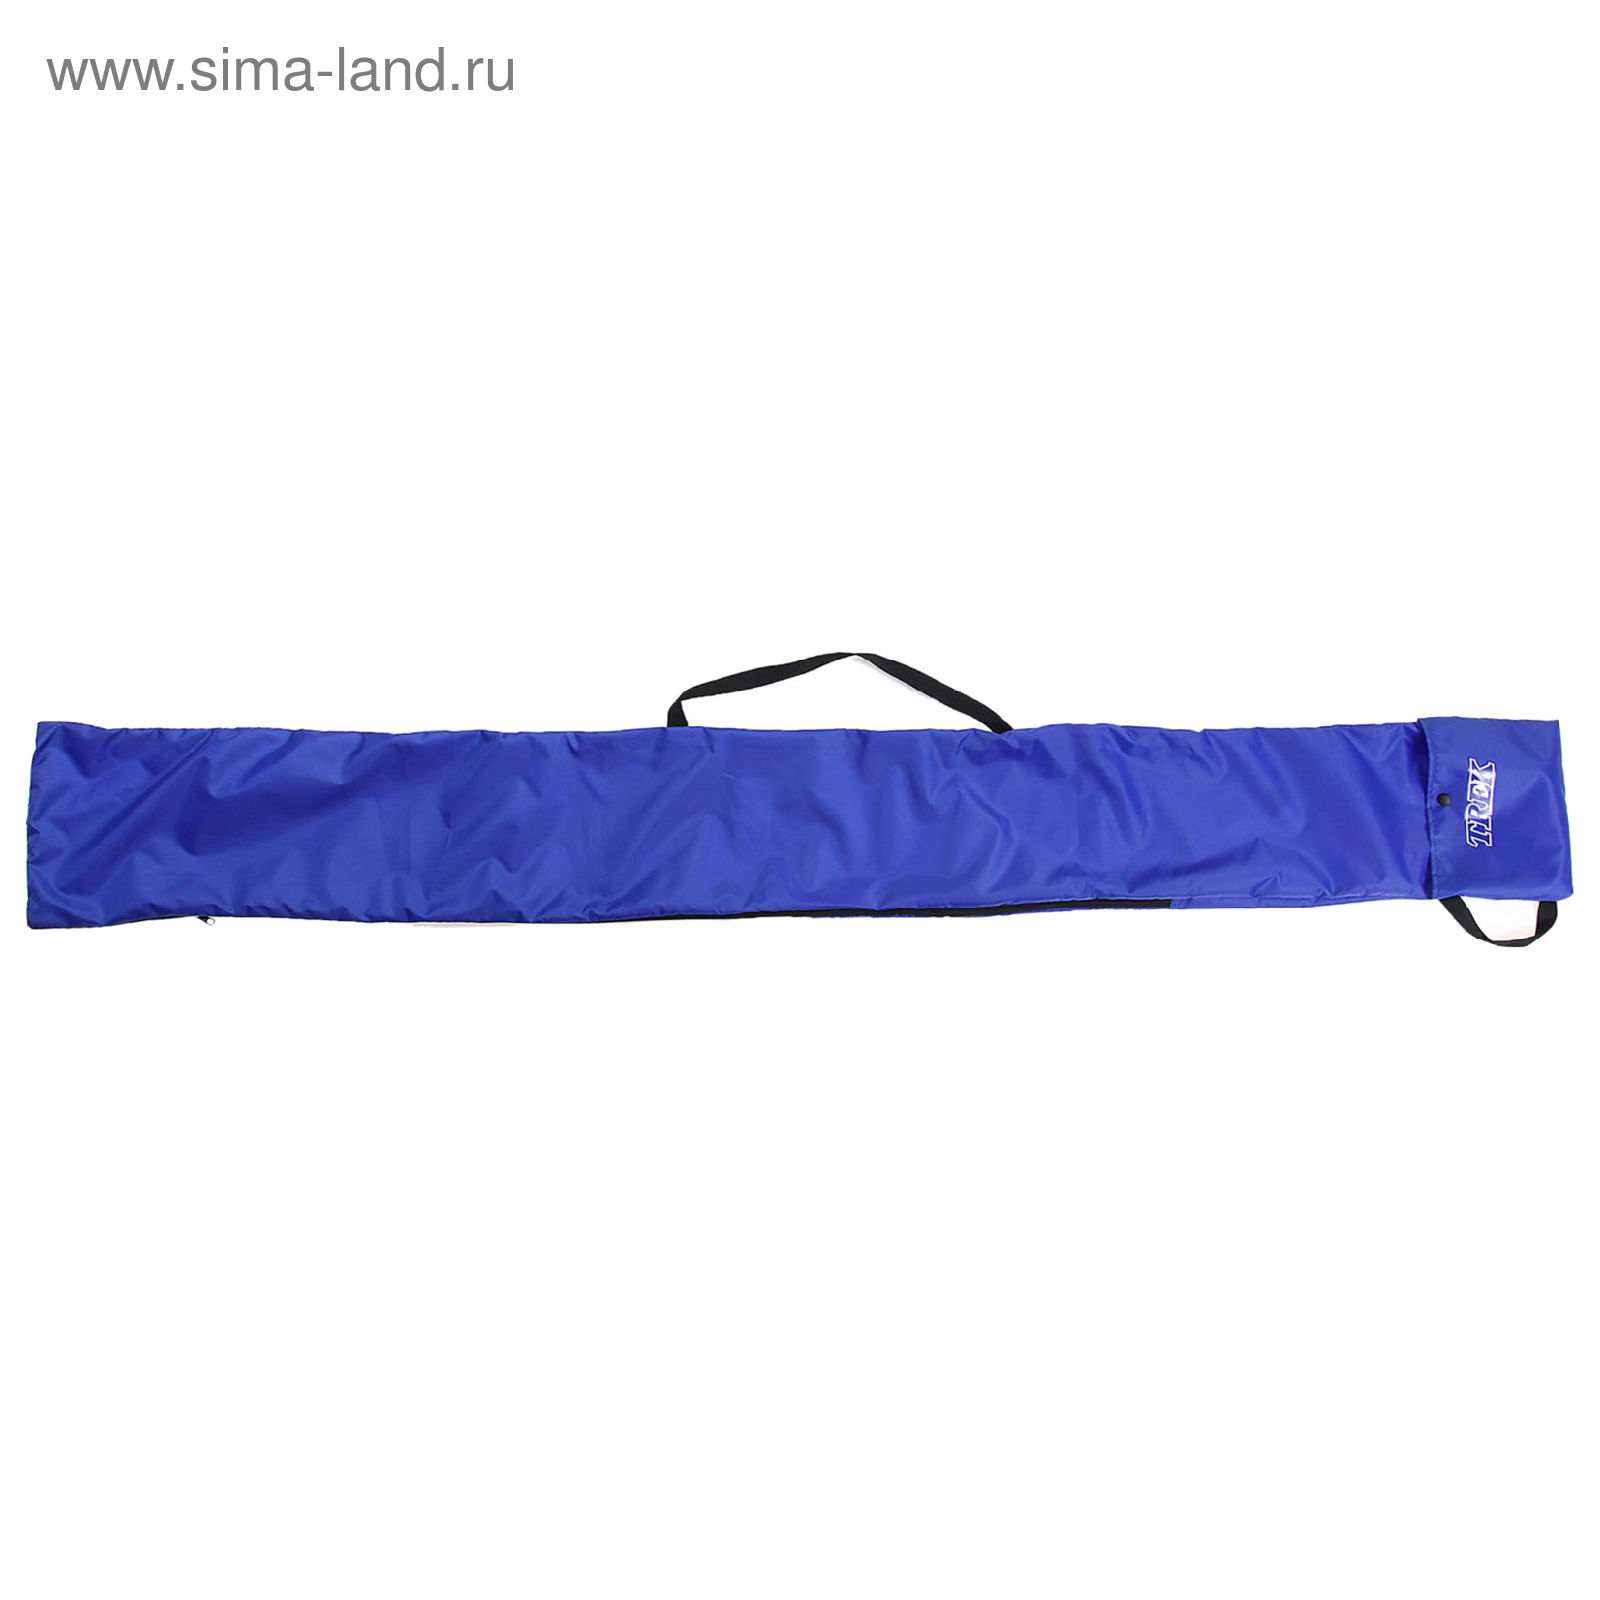 Чехол-сумка для беговых лыж 210см